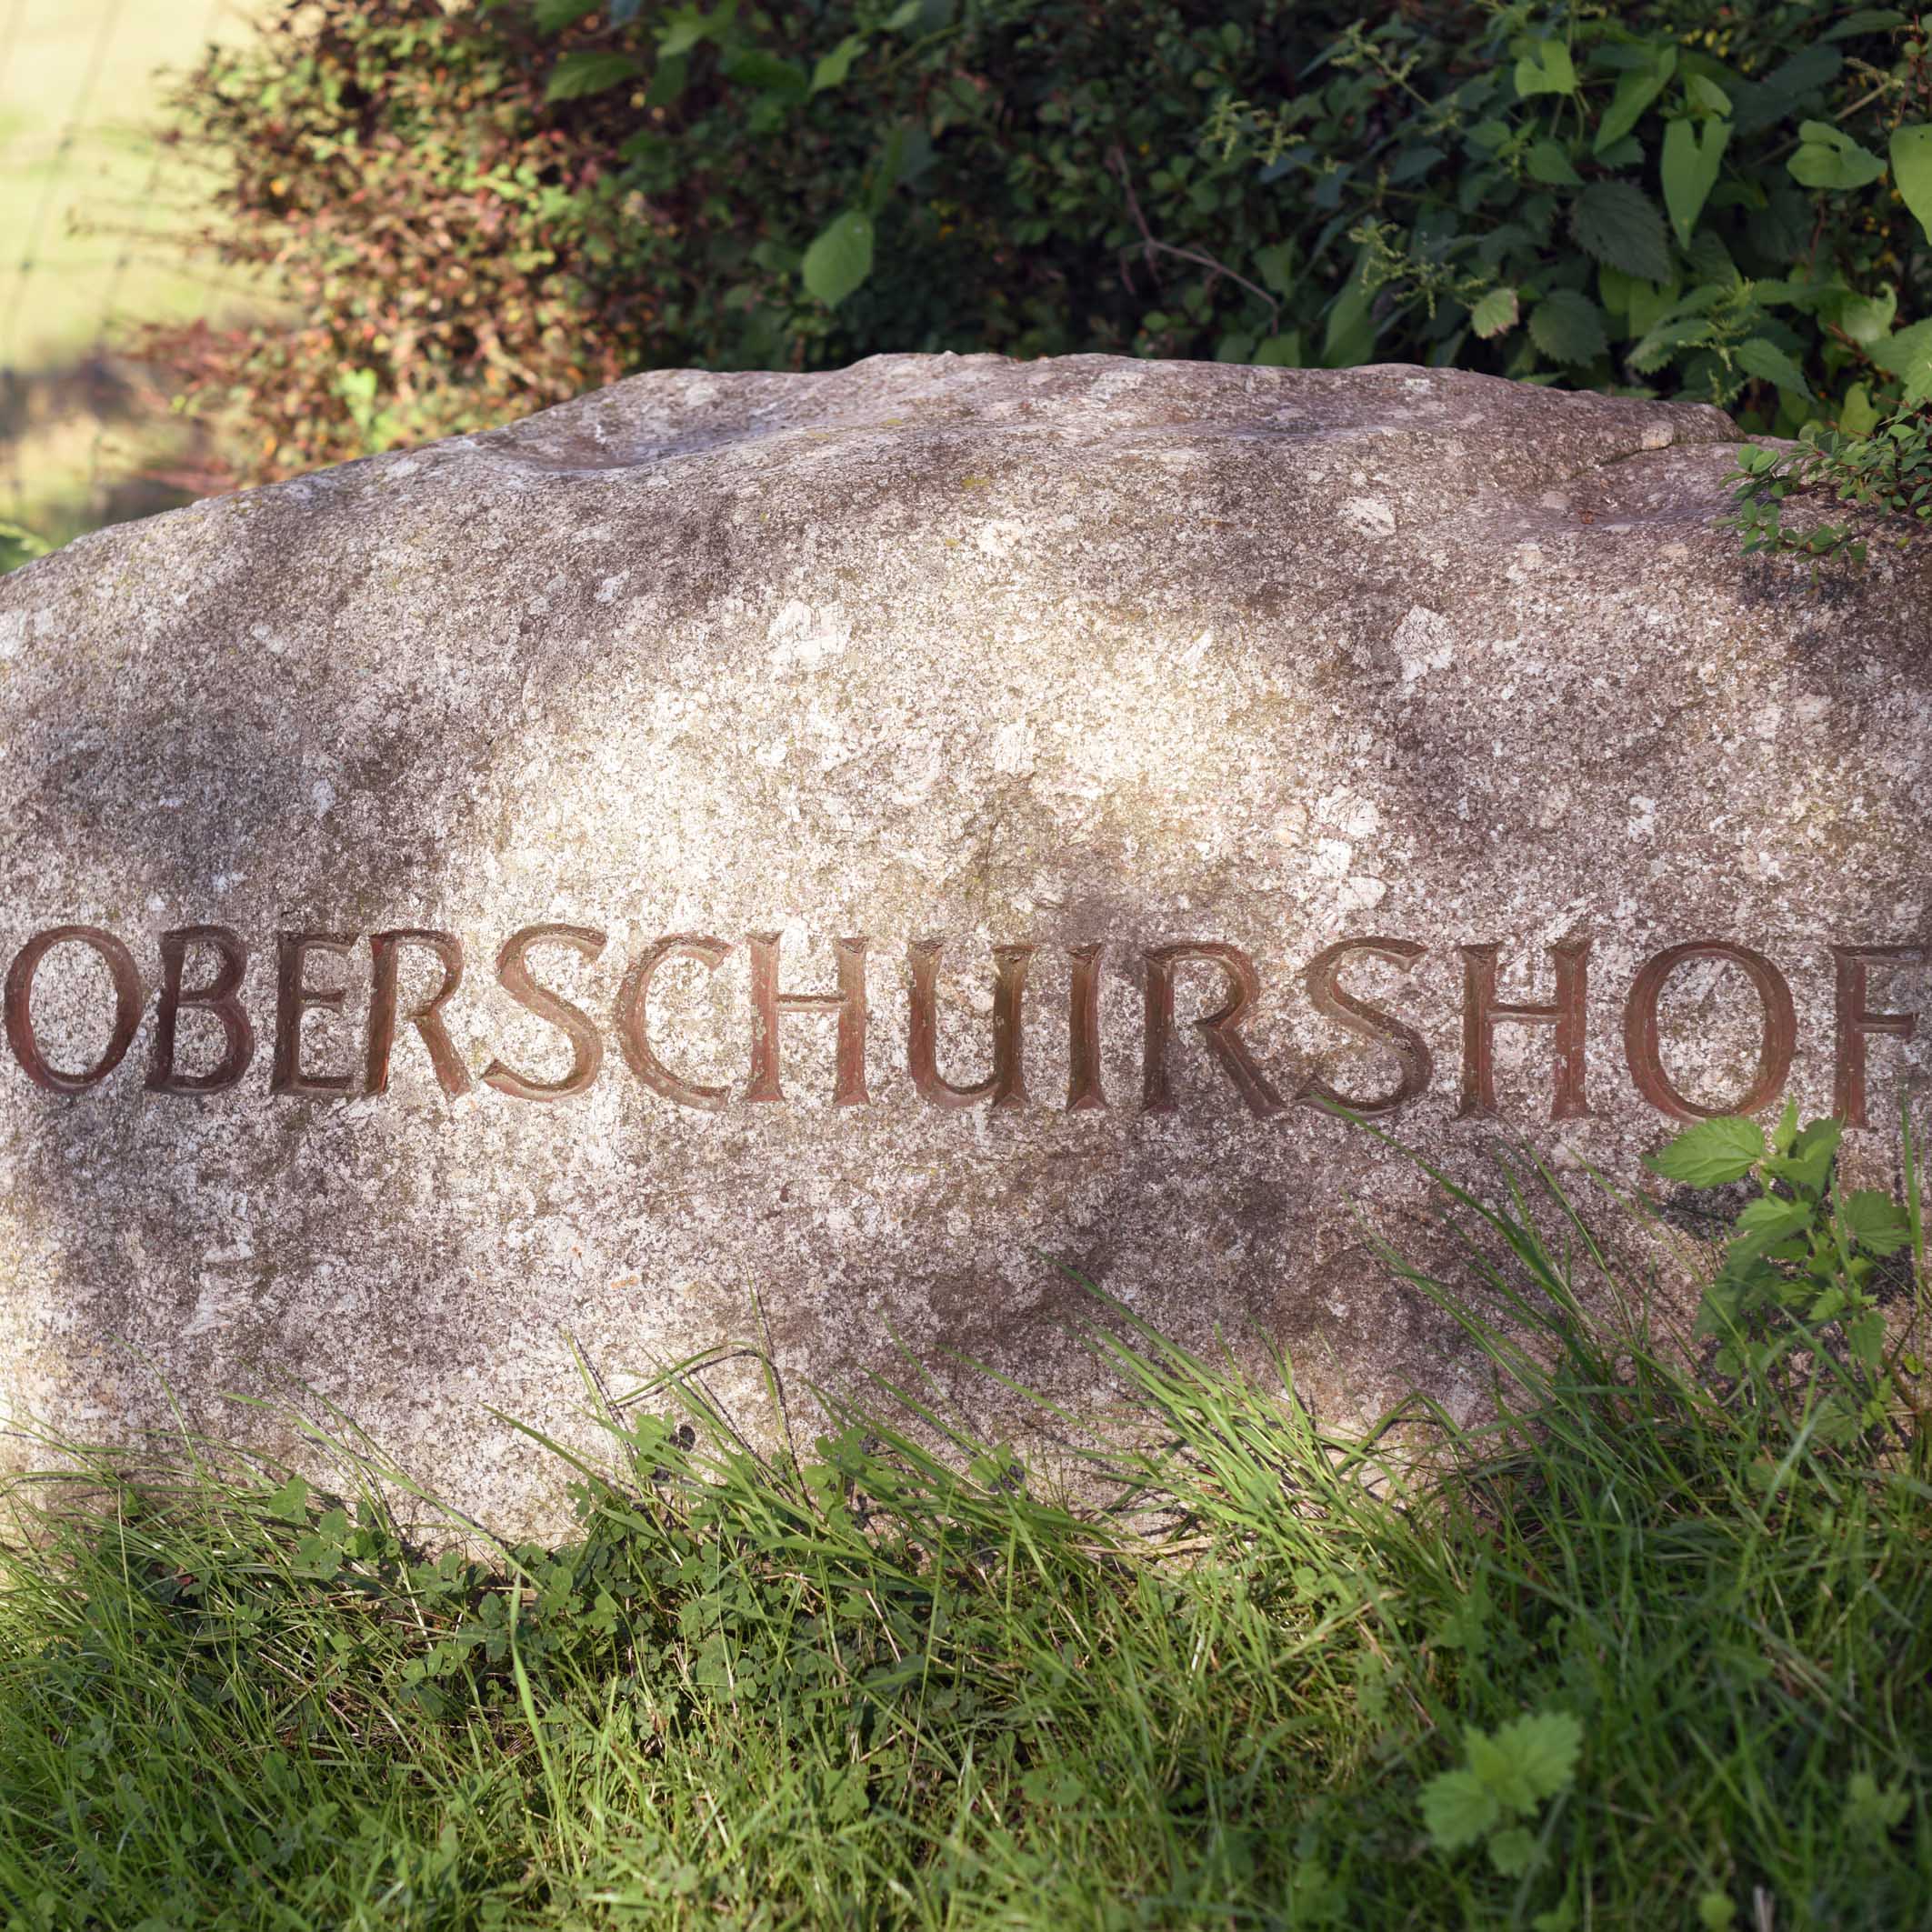 Oberschuirshof_(1)